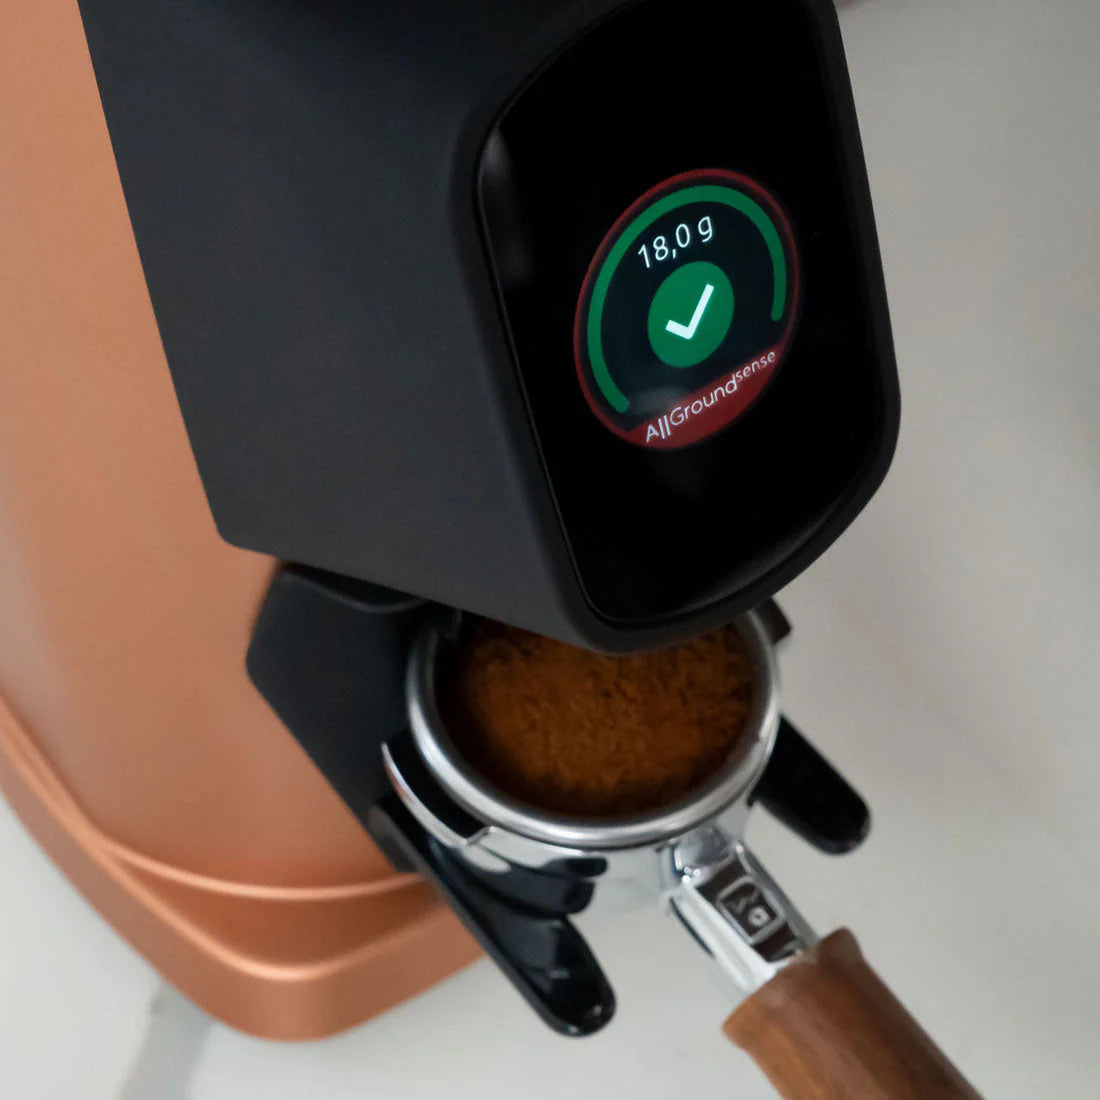 Fiorenzato All Ground Sense Coffee Grinder